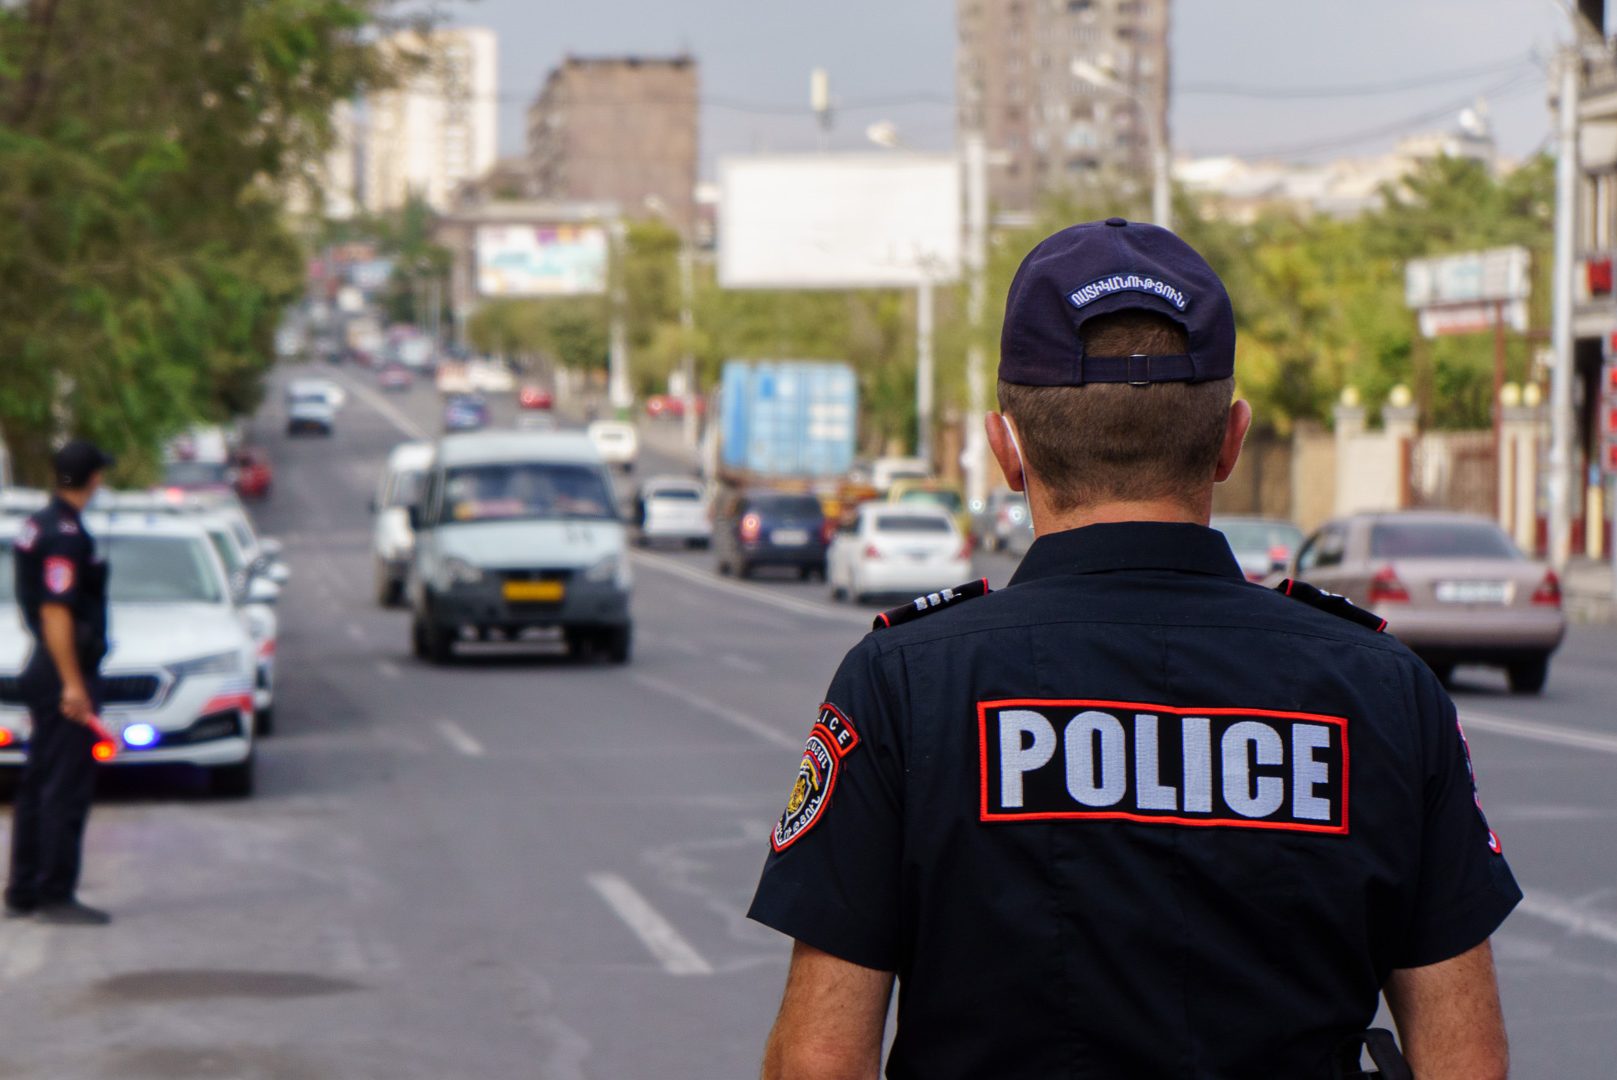 Այդ մեքենայով շրջում են կասկածելի անձինք.Երևանում «դիվանագիտական» համարներով Mazda-ն հետապնդումից հետո վնասազերծվեց, թմրամիջոց է հայտնաբերվել